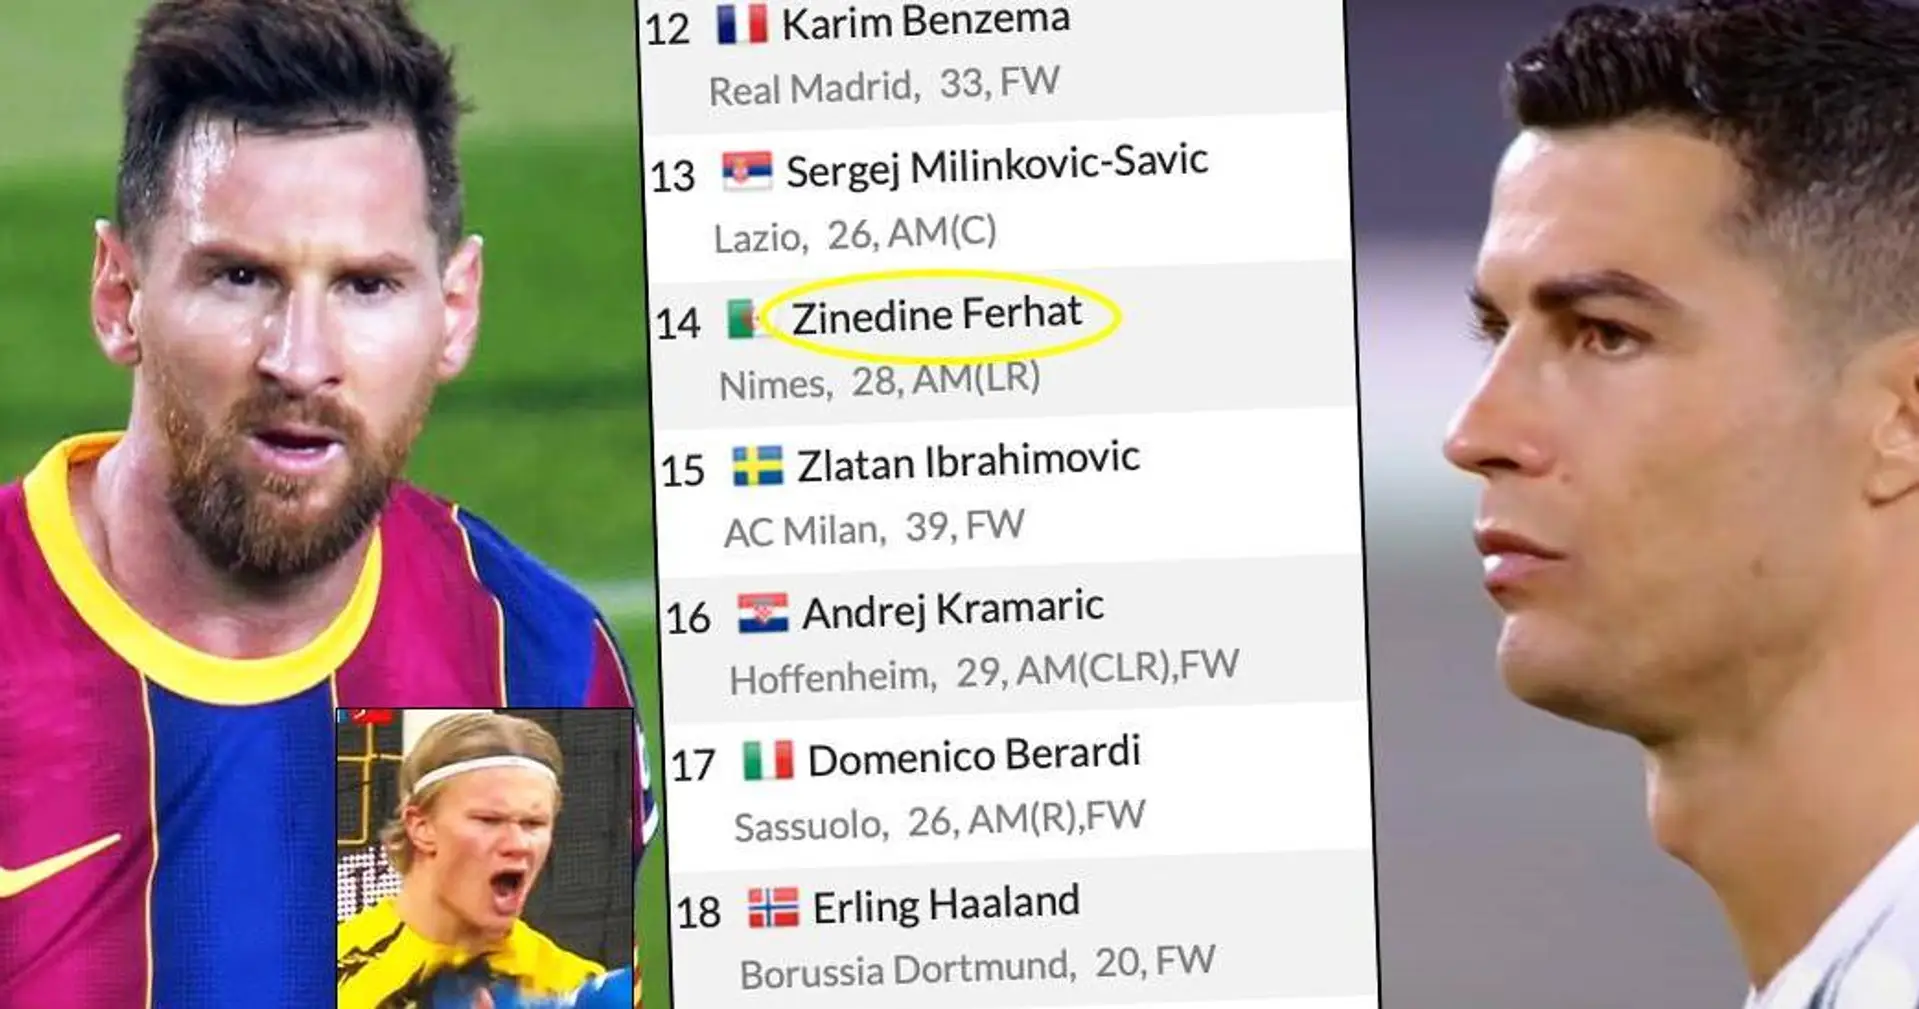 Giocatori con più premi MVP in questa stagione - Benzema, Zlatan e CR7 fuori dalla top 9